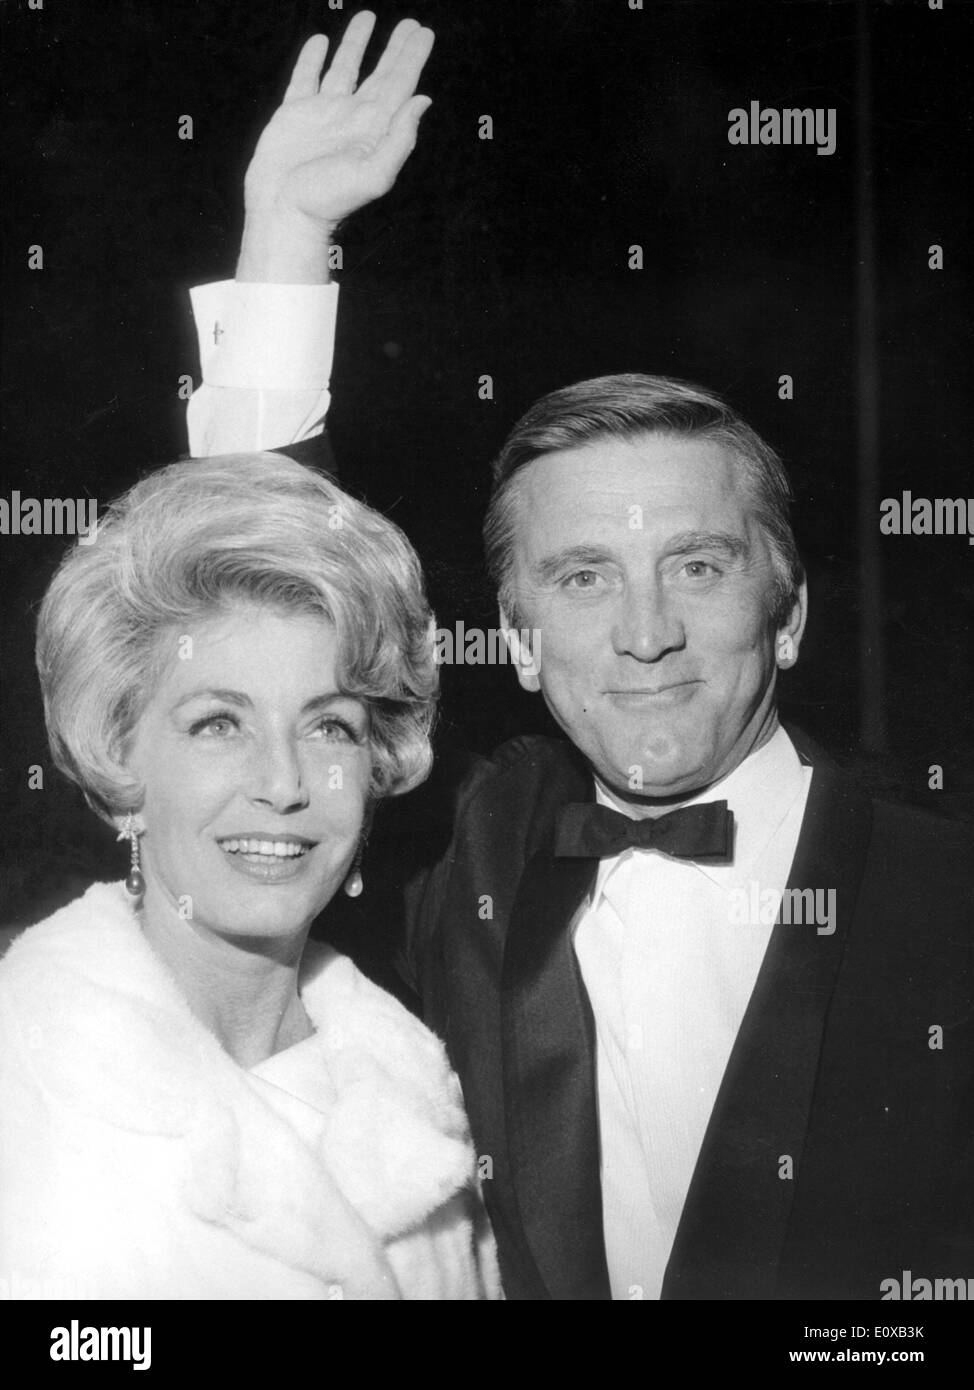 Attore Kirk Douglas al Festival di Cannes con la moglie Anne Foto Stock